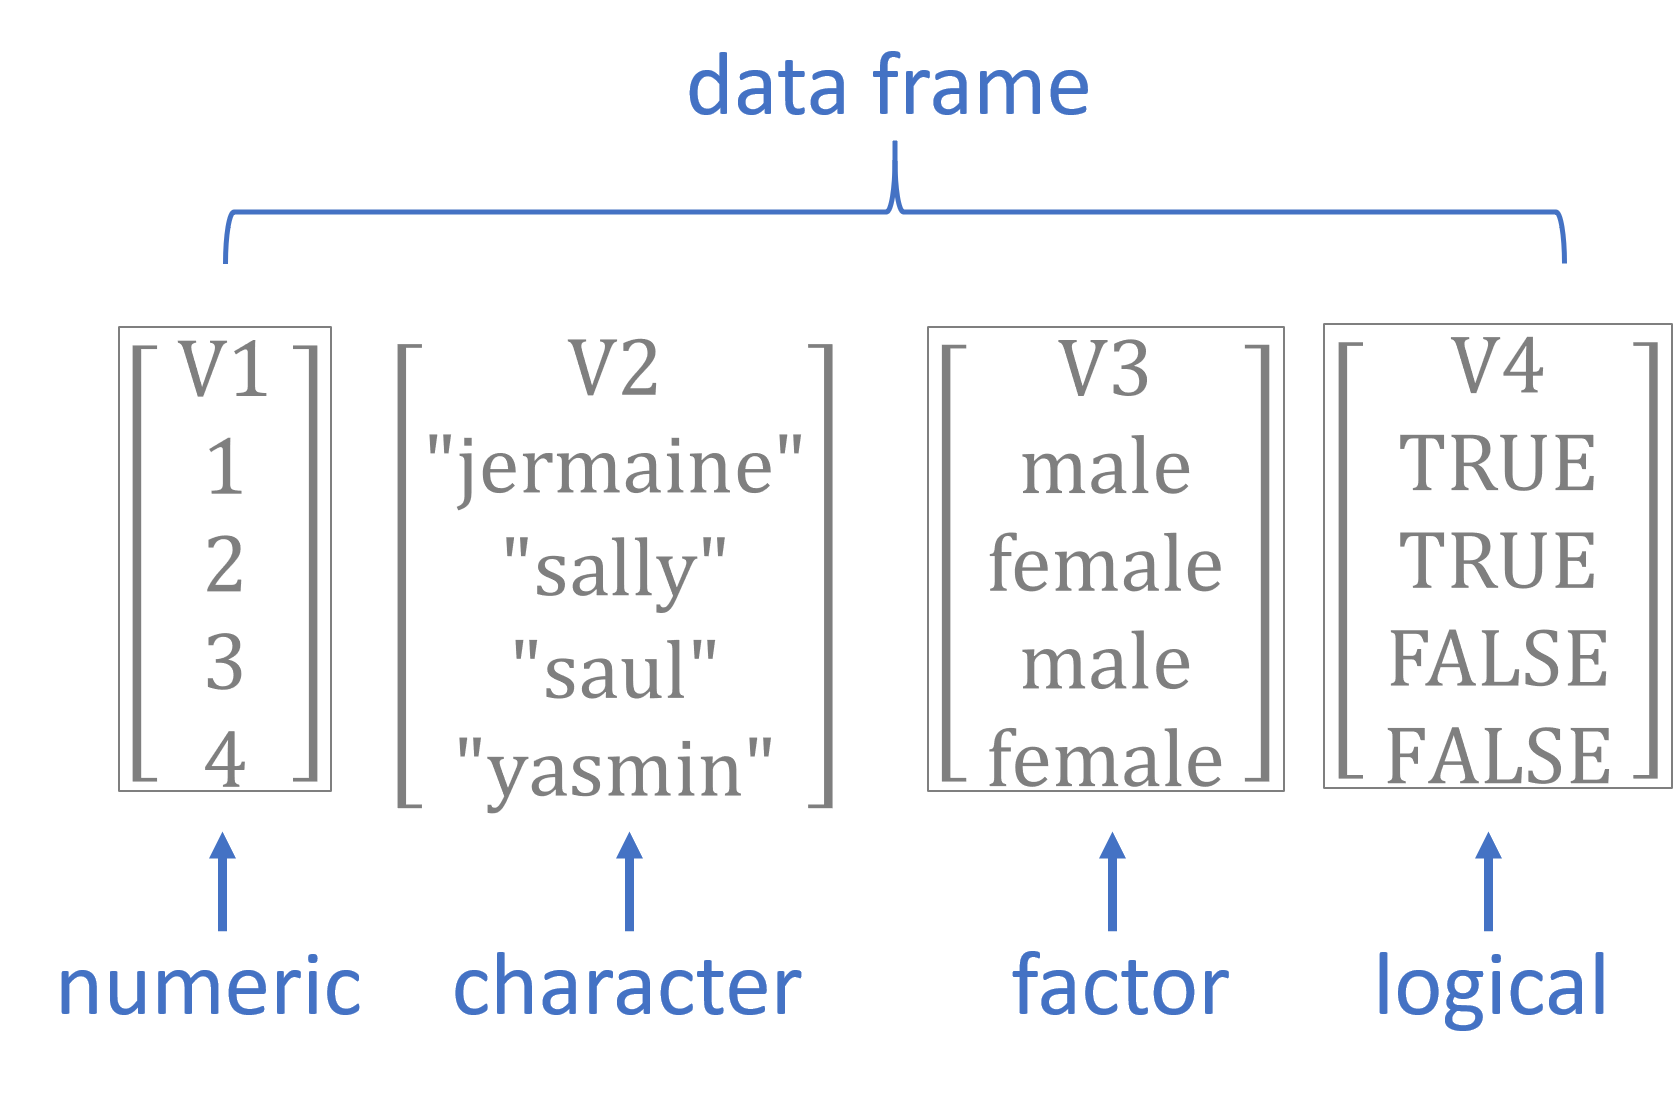 Basic data types in R